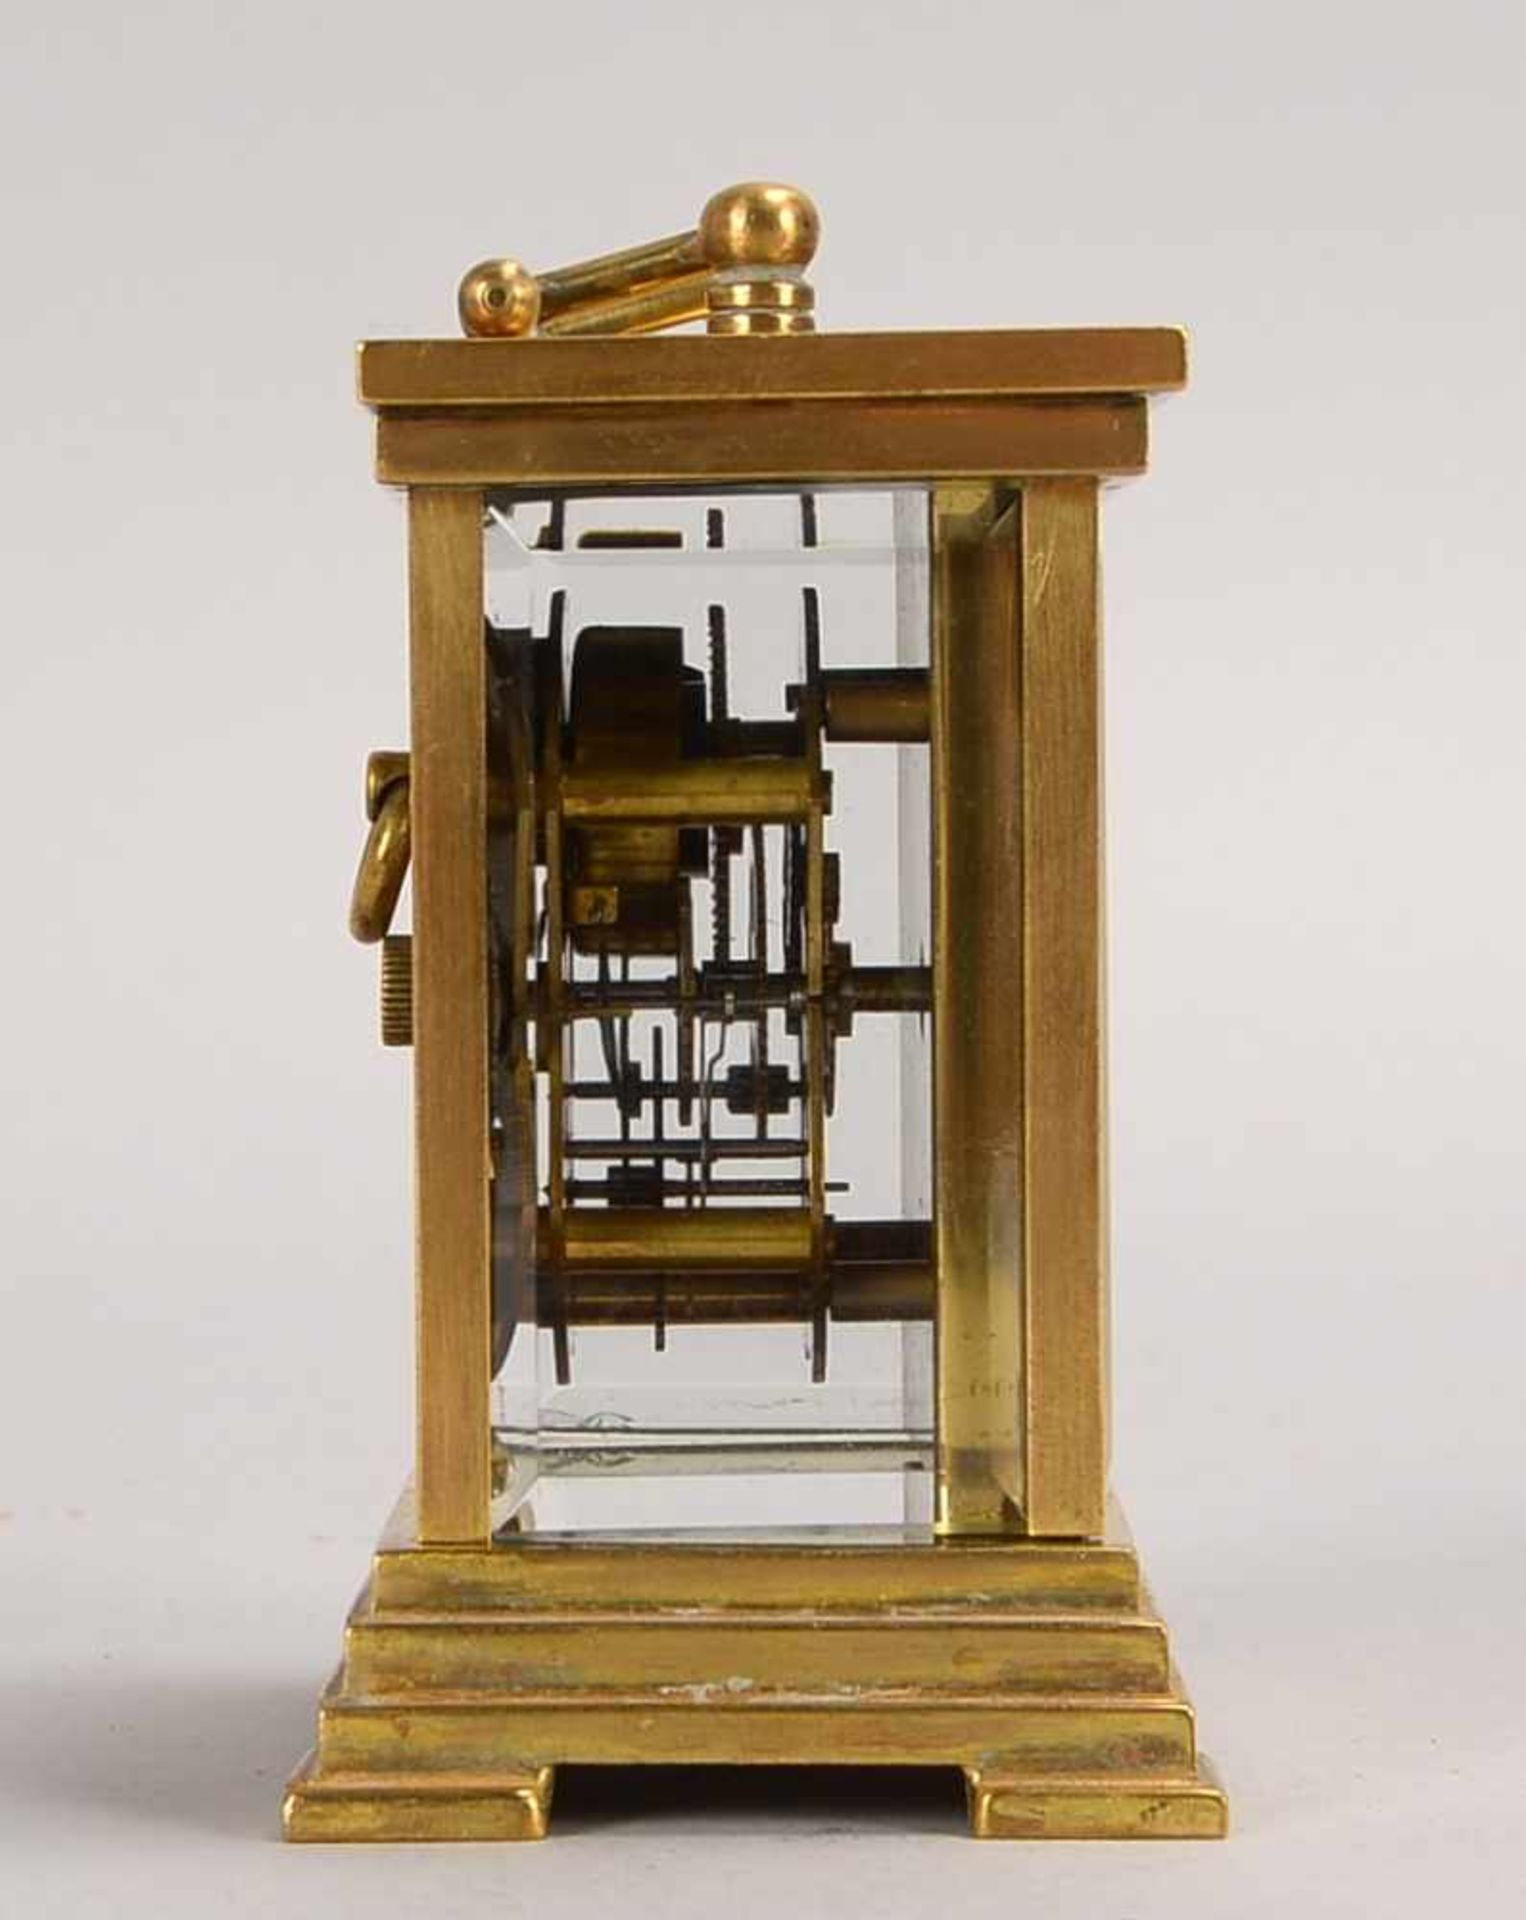 Tischuhr, 'Waterbury Clock Co.', USA, Messing-Gehäuse 2-seitig verglast/Glas mit Facettenschliff, - Bild 3 aus 3